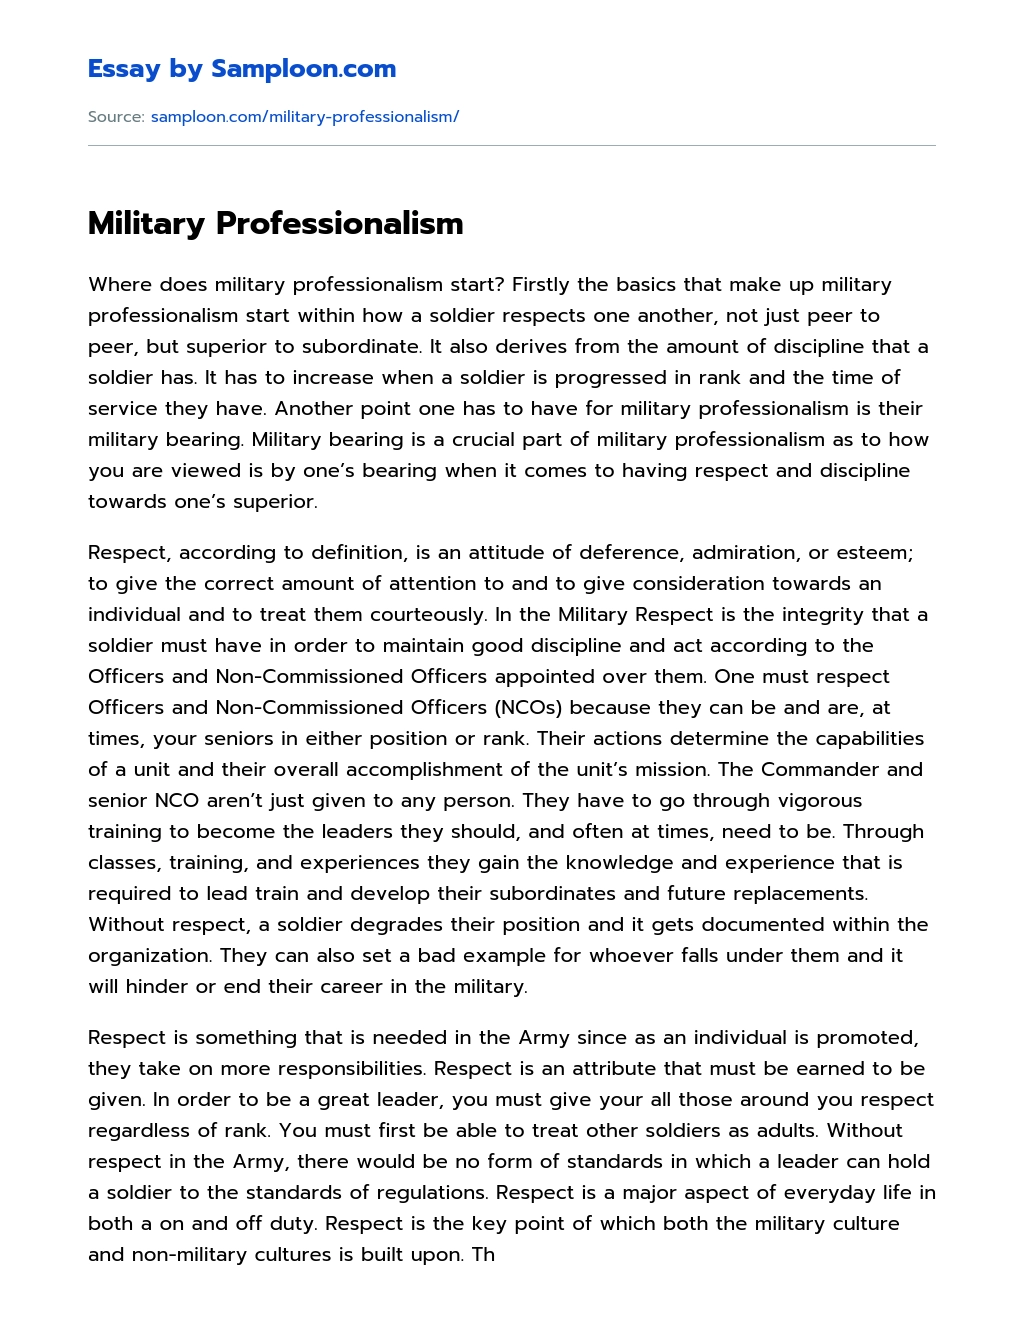 explain military professionalism essay